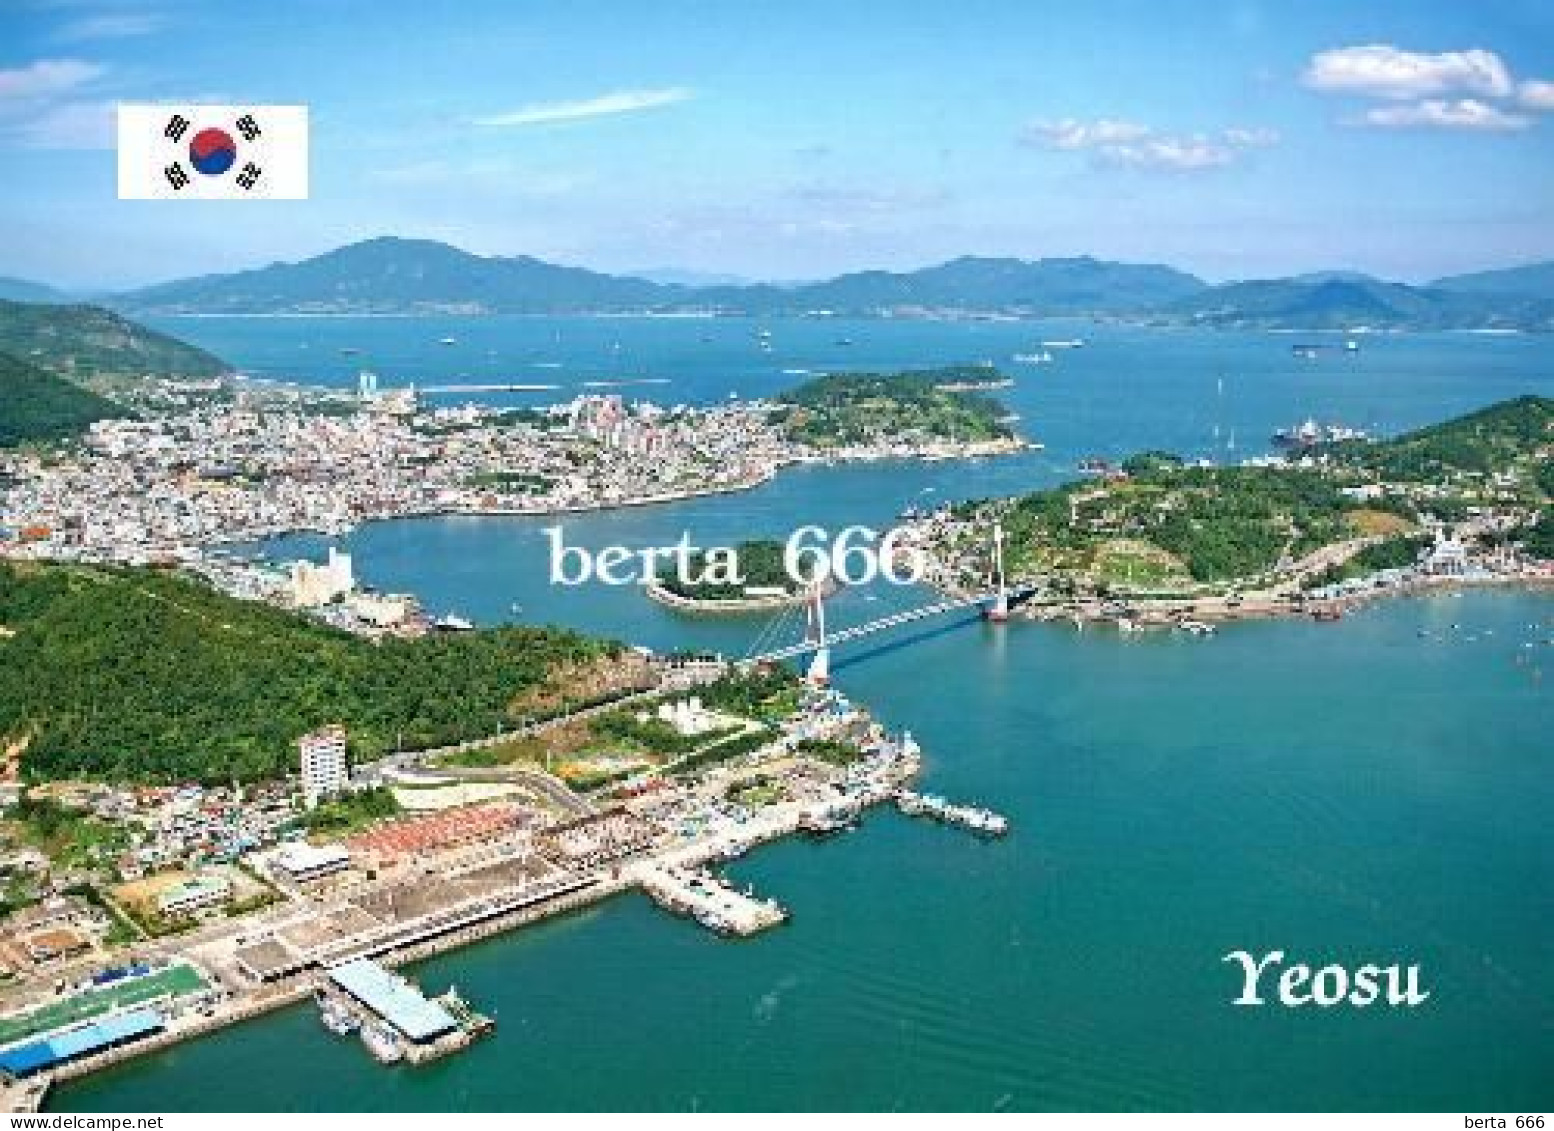 South Korea Yeosu Aerial View New Postcard - Korea (Süd)